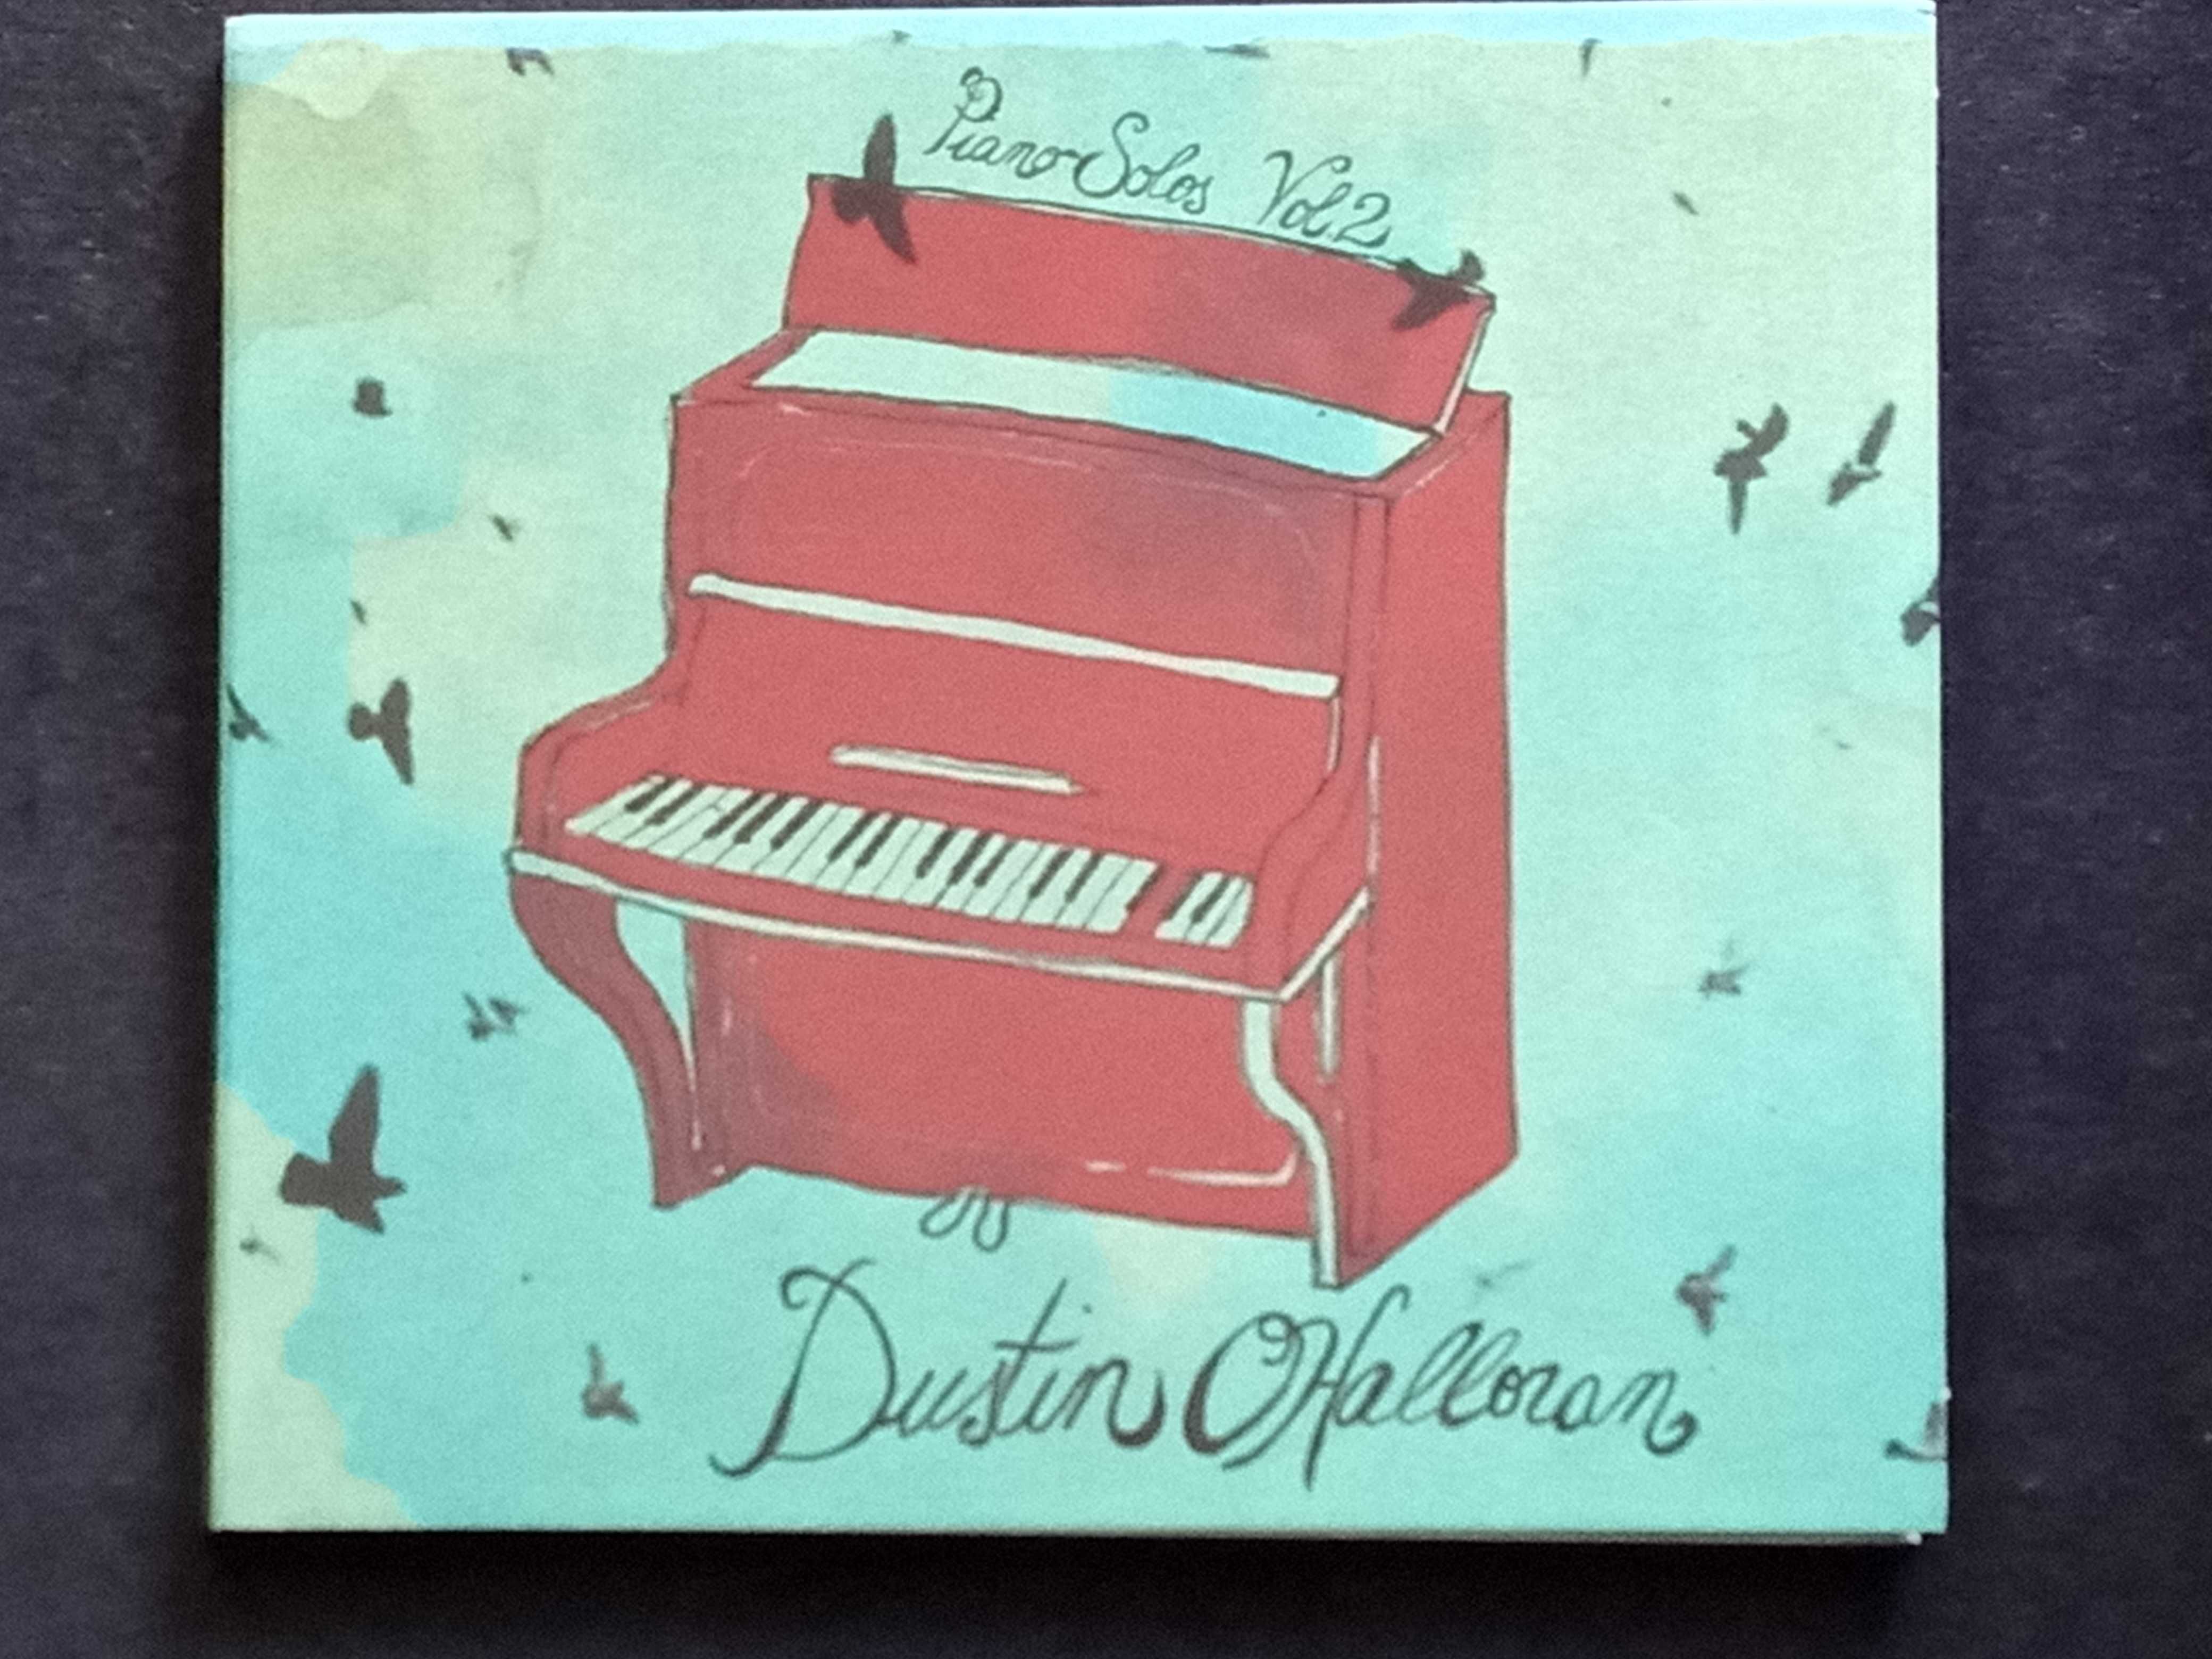 Cd "Piano Solos Vol. 2" de Dustin O'Halloran